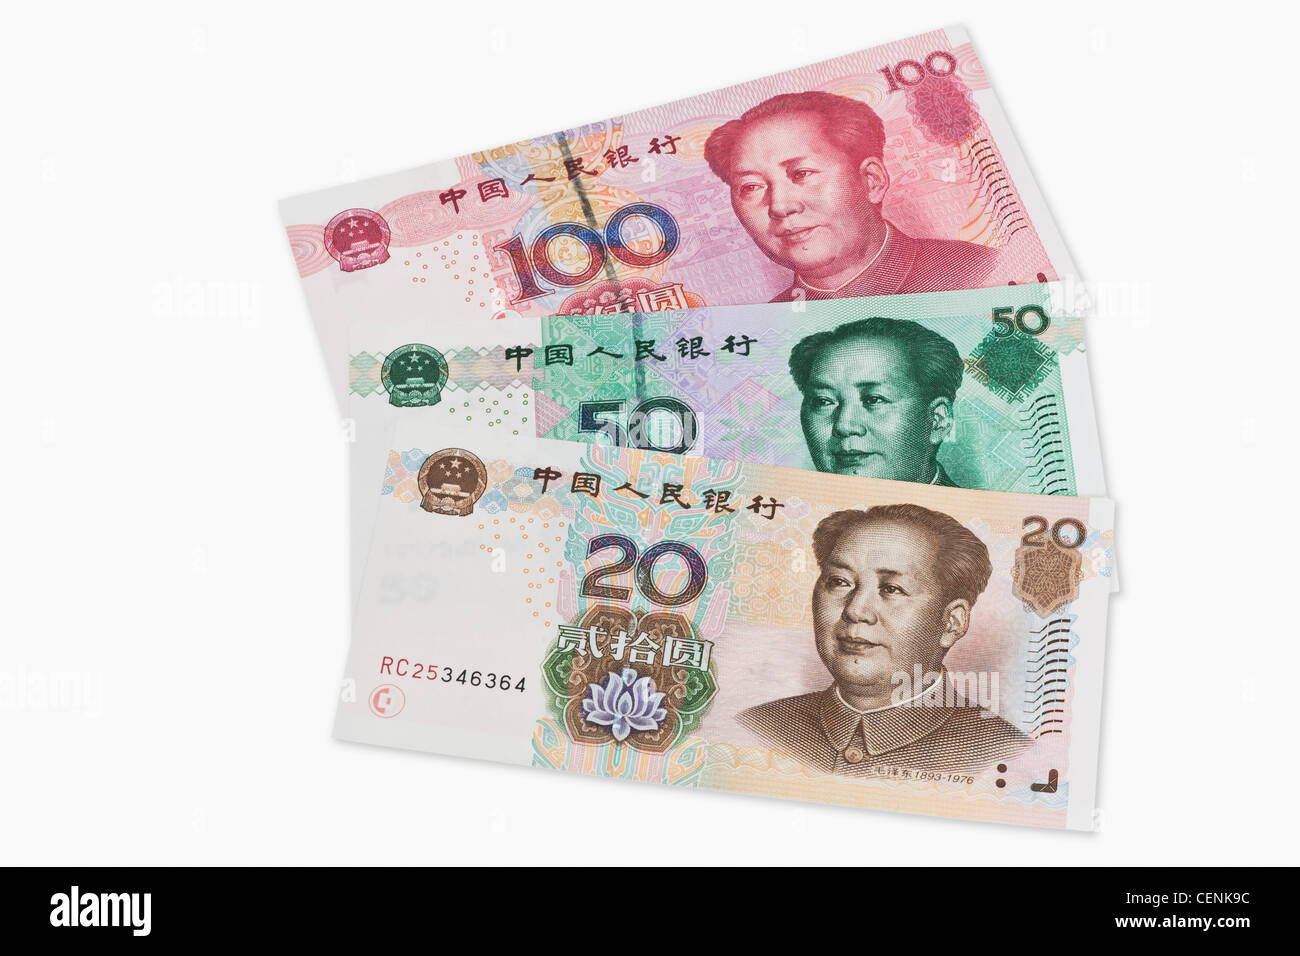 20, 50 e 100 yuan fatture con il ritratto di Mao Zedong. Il renminbi, la valuta cinese, è stato introdotto nel 1949. Foto Stock